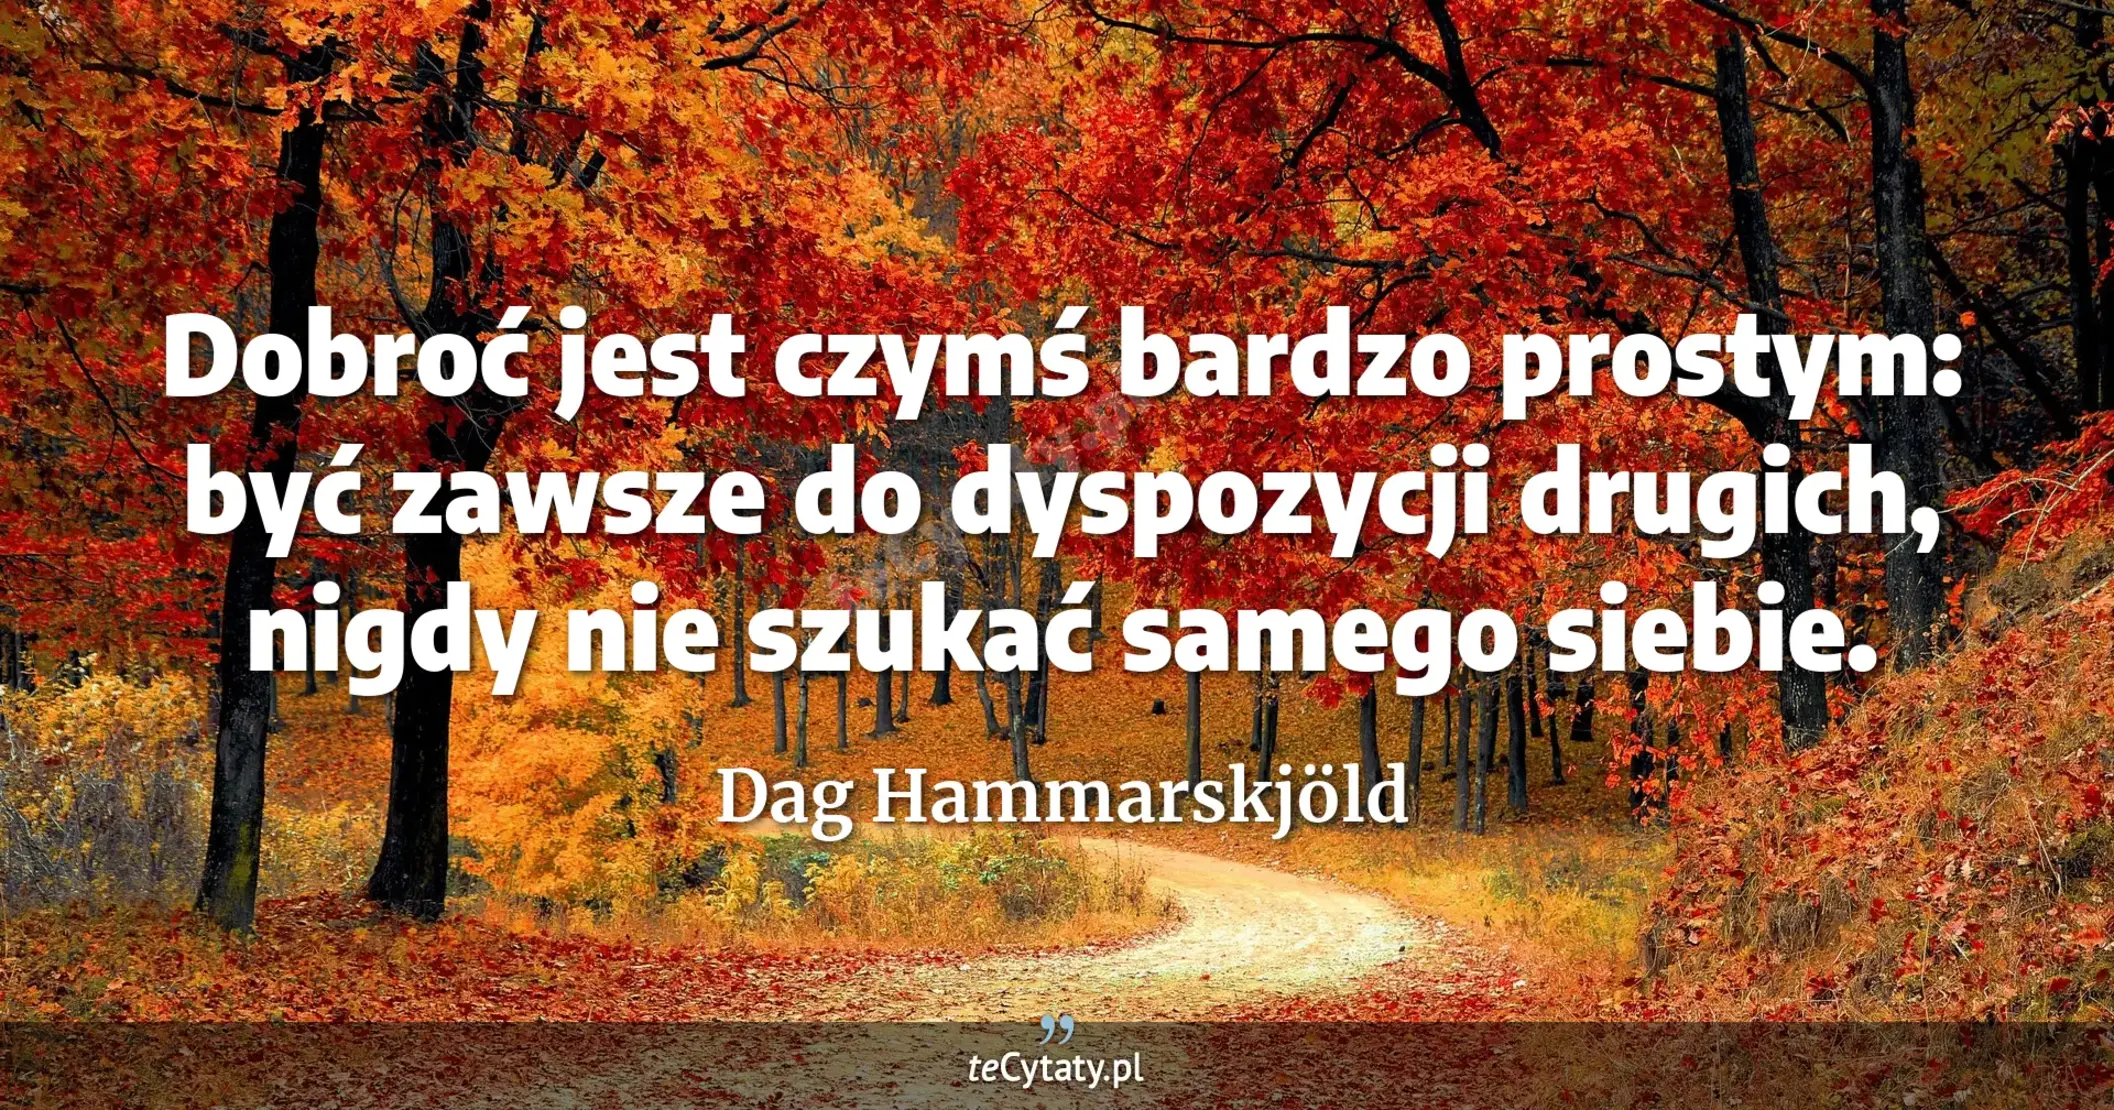 Dobroć jest czymś bardzo prostym: być zawsze do dyspozycji drugich, nigdy nie szukać samego siebie. - Dag Hammarskjöld